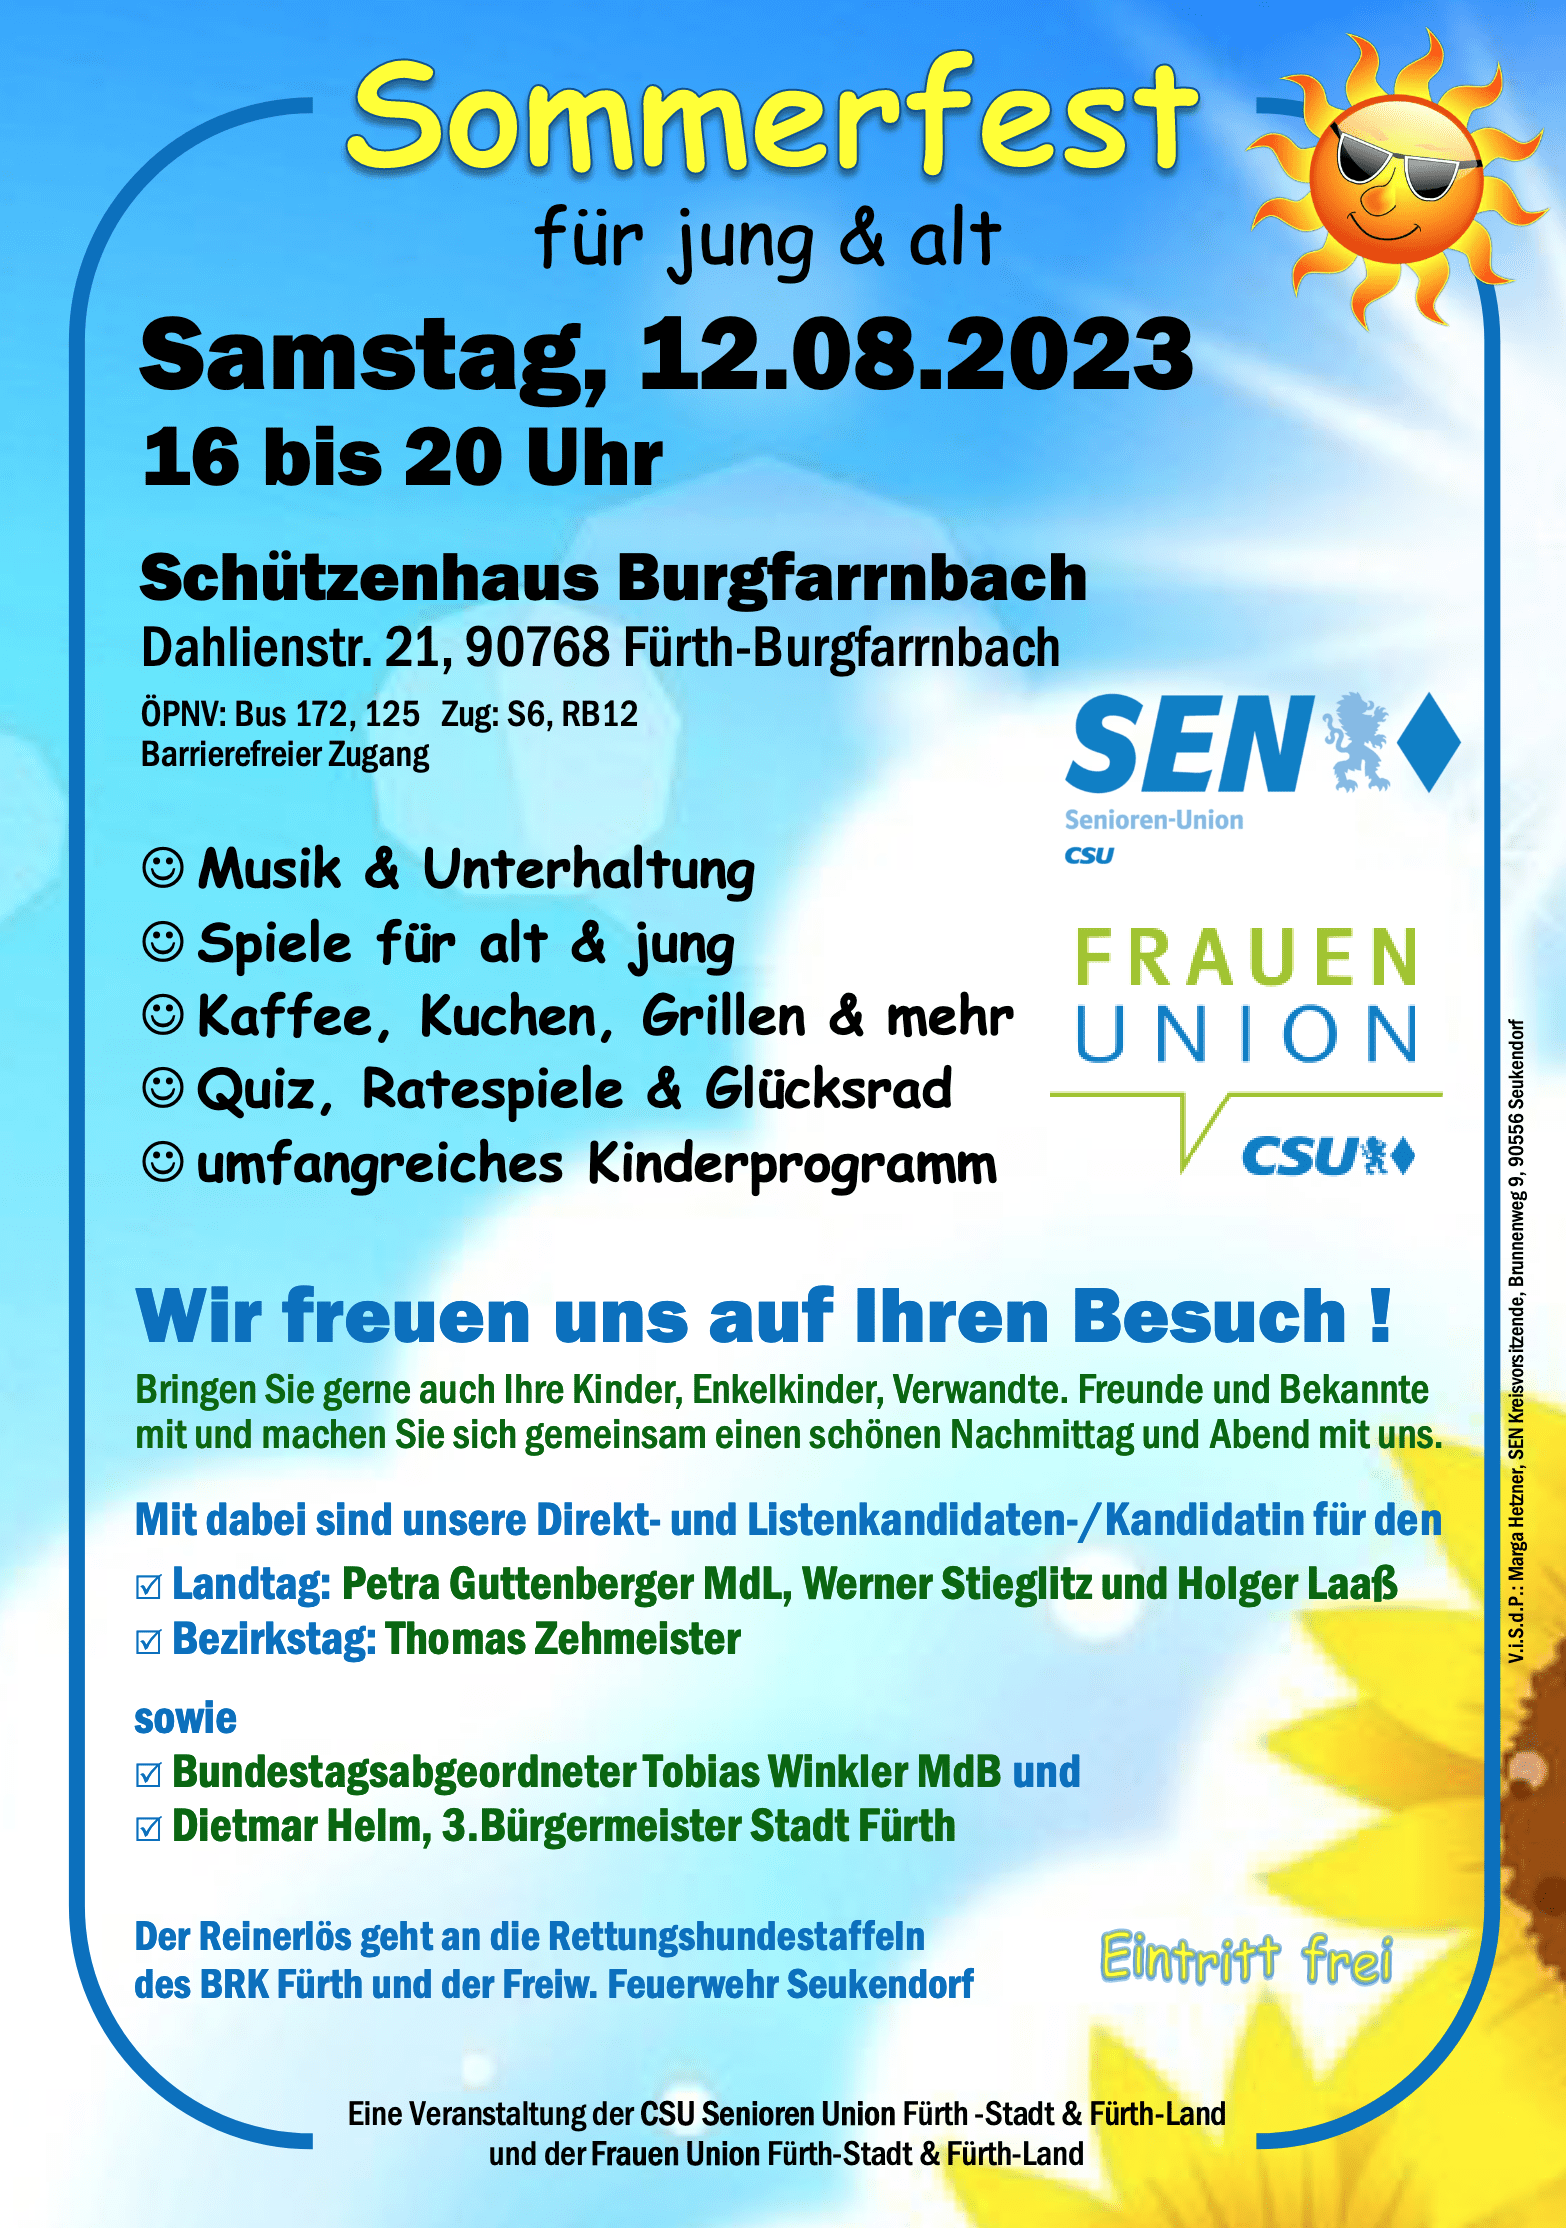 Sommerfest - 12.08.2023 - Schützenhaus Burgfarrnbach